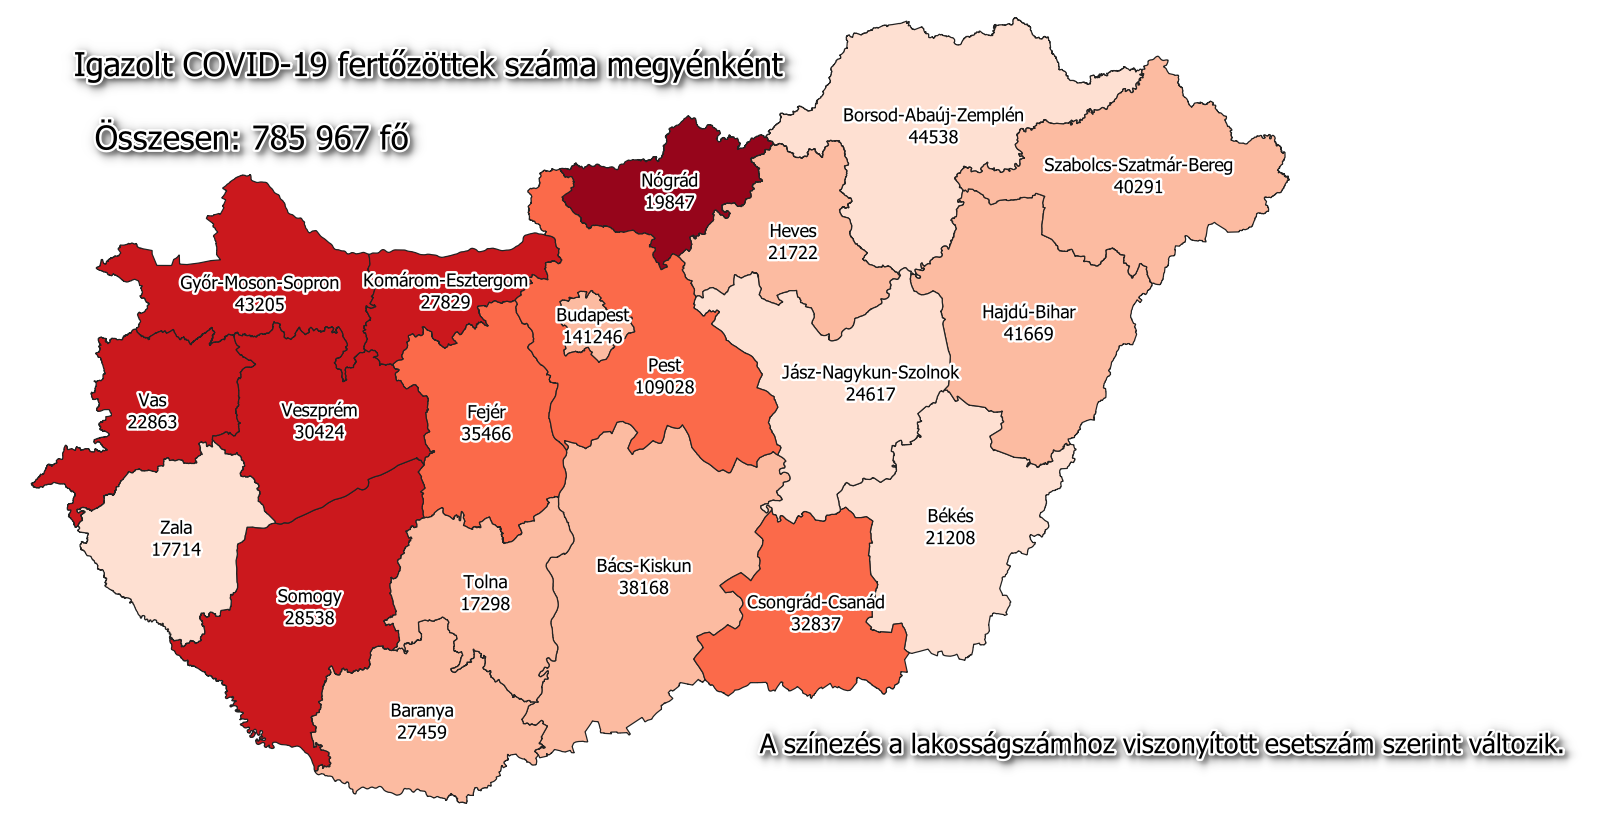 فيروس كورونا خريطة المجر